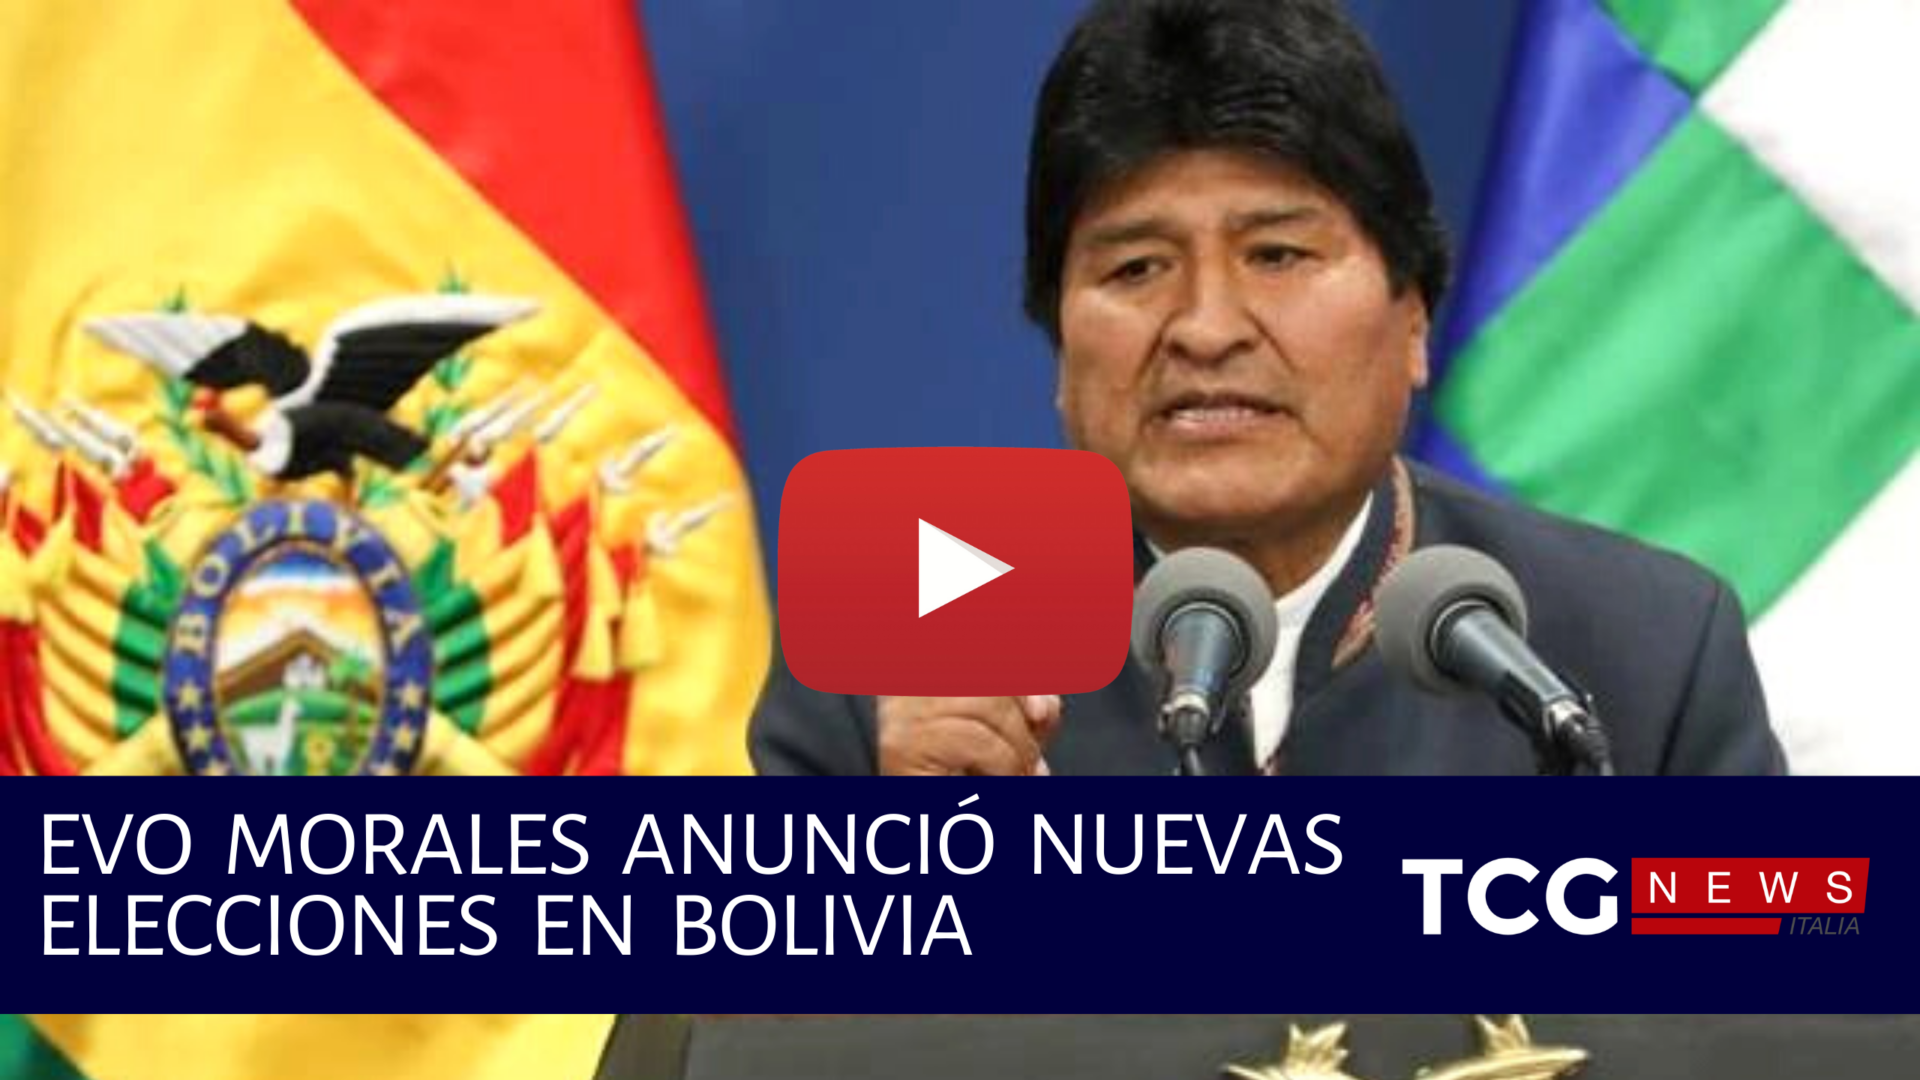 Evo Morales Anunció nuevas elecciones en Bolivia